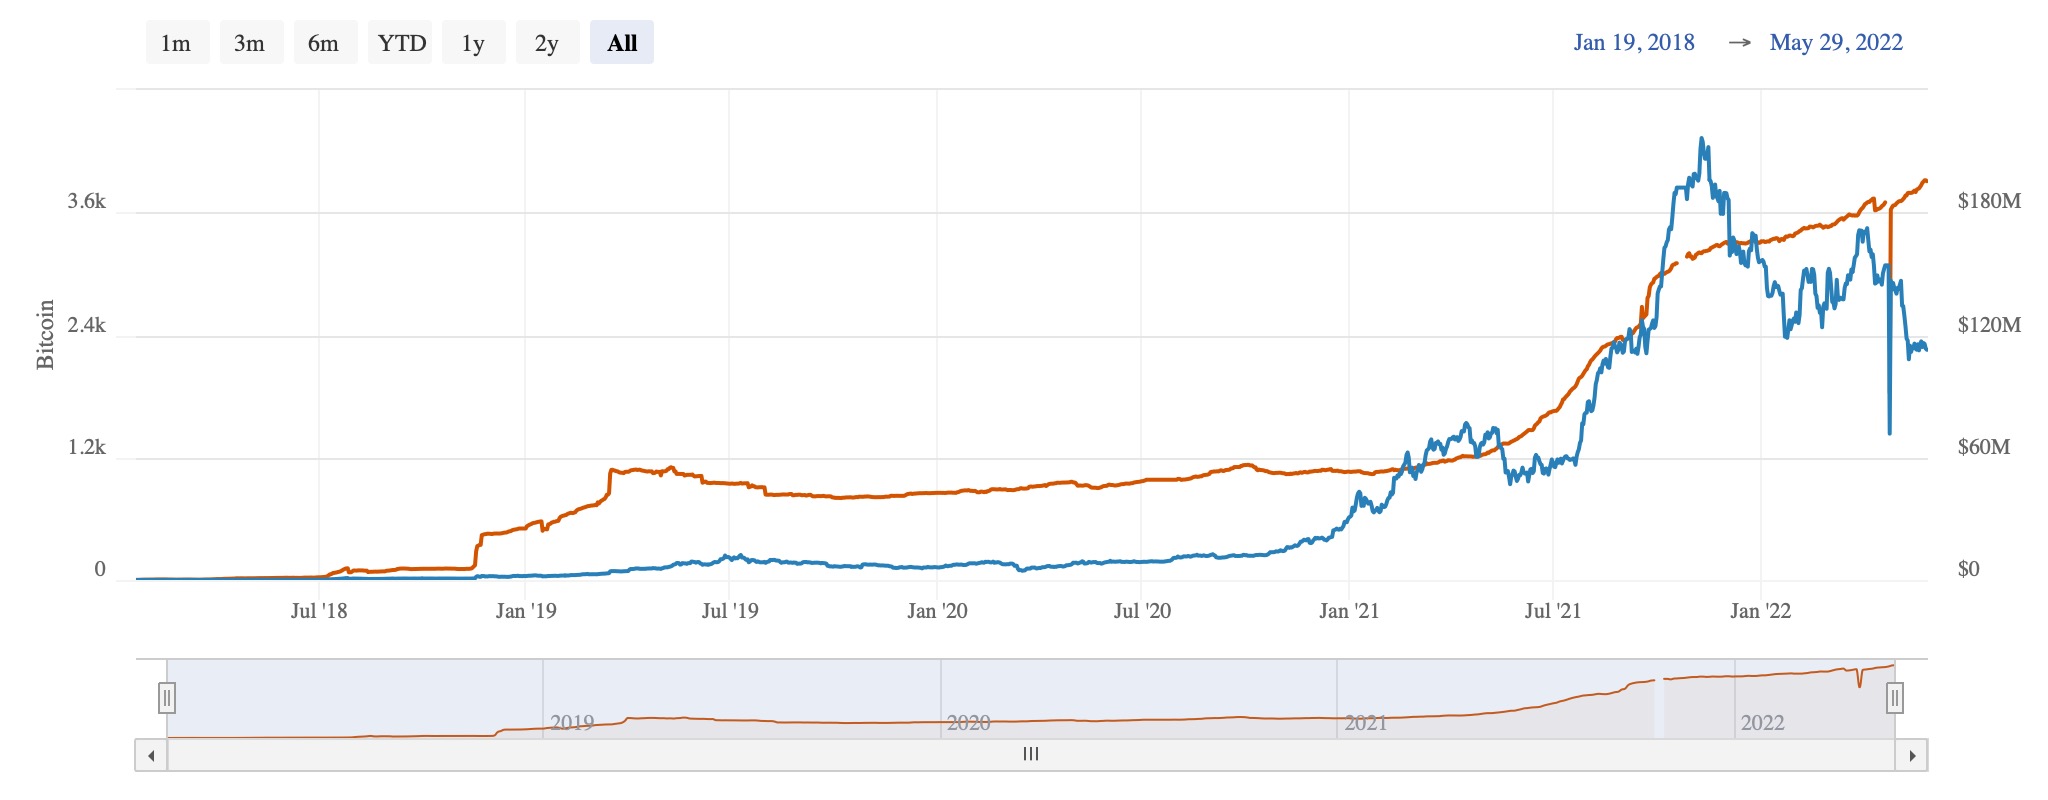 es de bitcoin [BTC] recuperación de precios respaldada por el crecimiento de Lightning Network